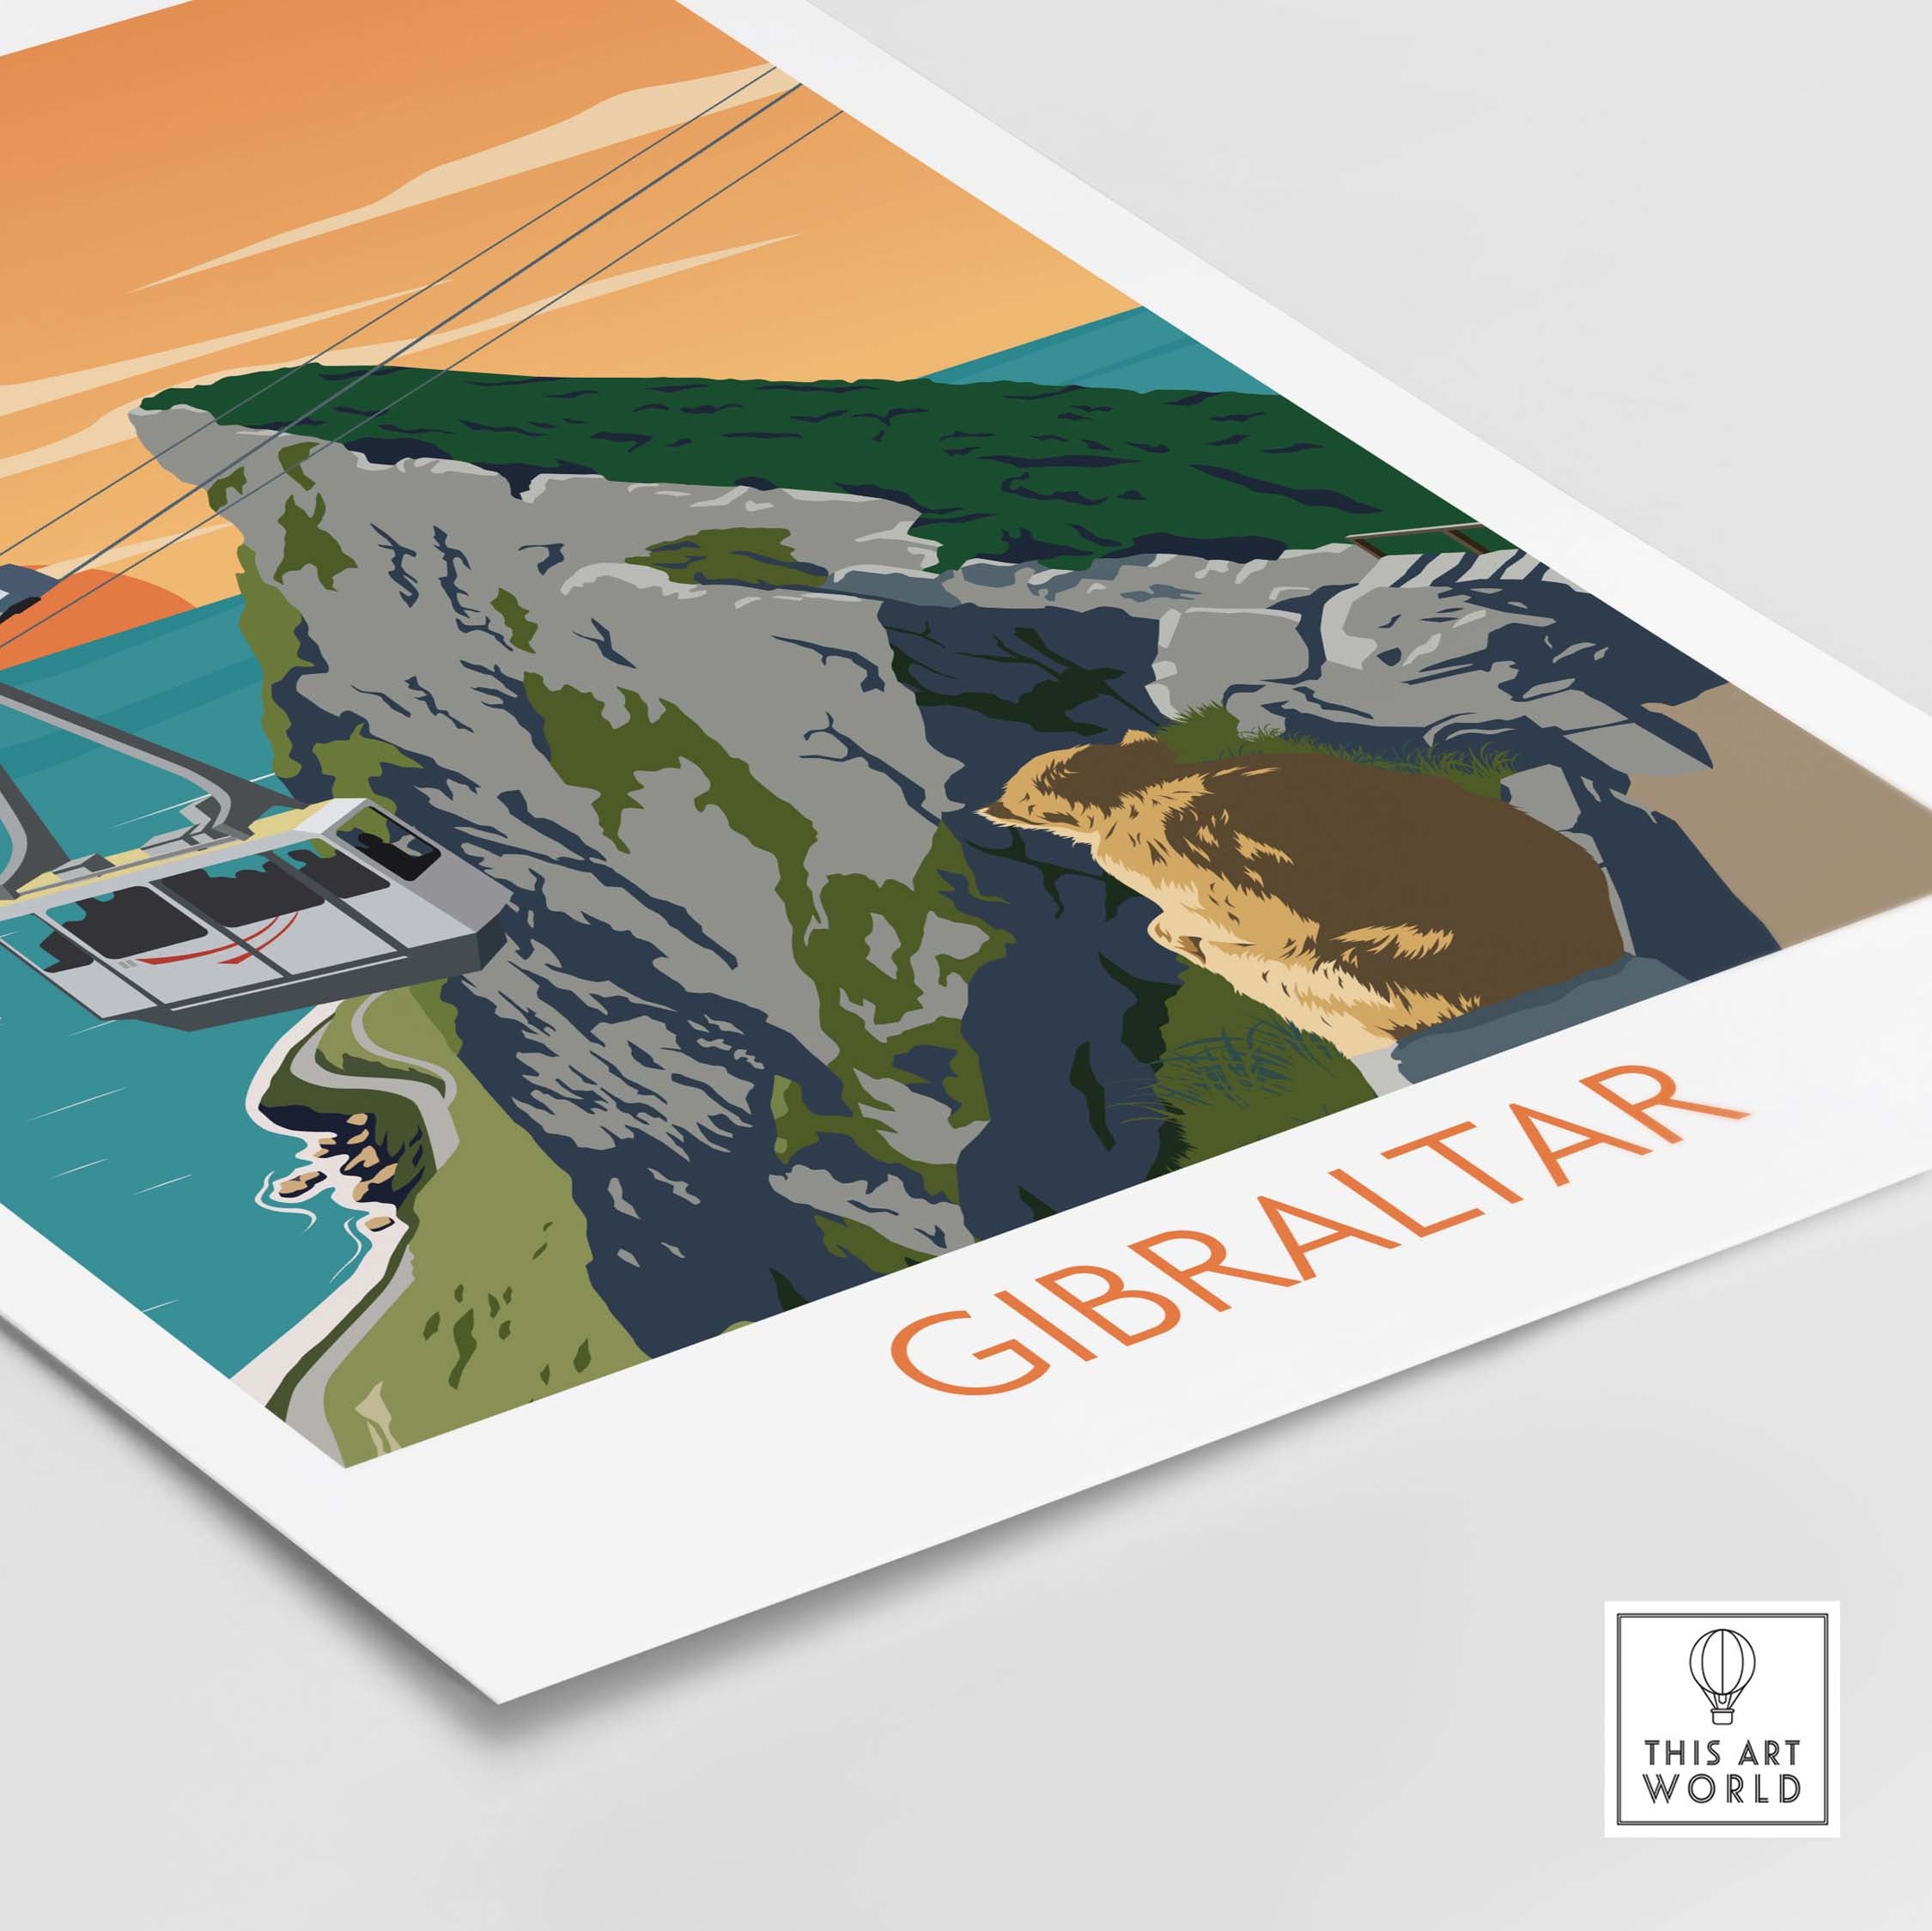 gibraltar travel poster art print